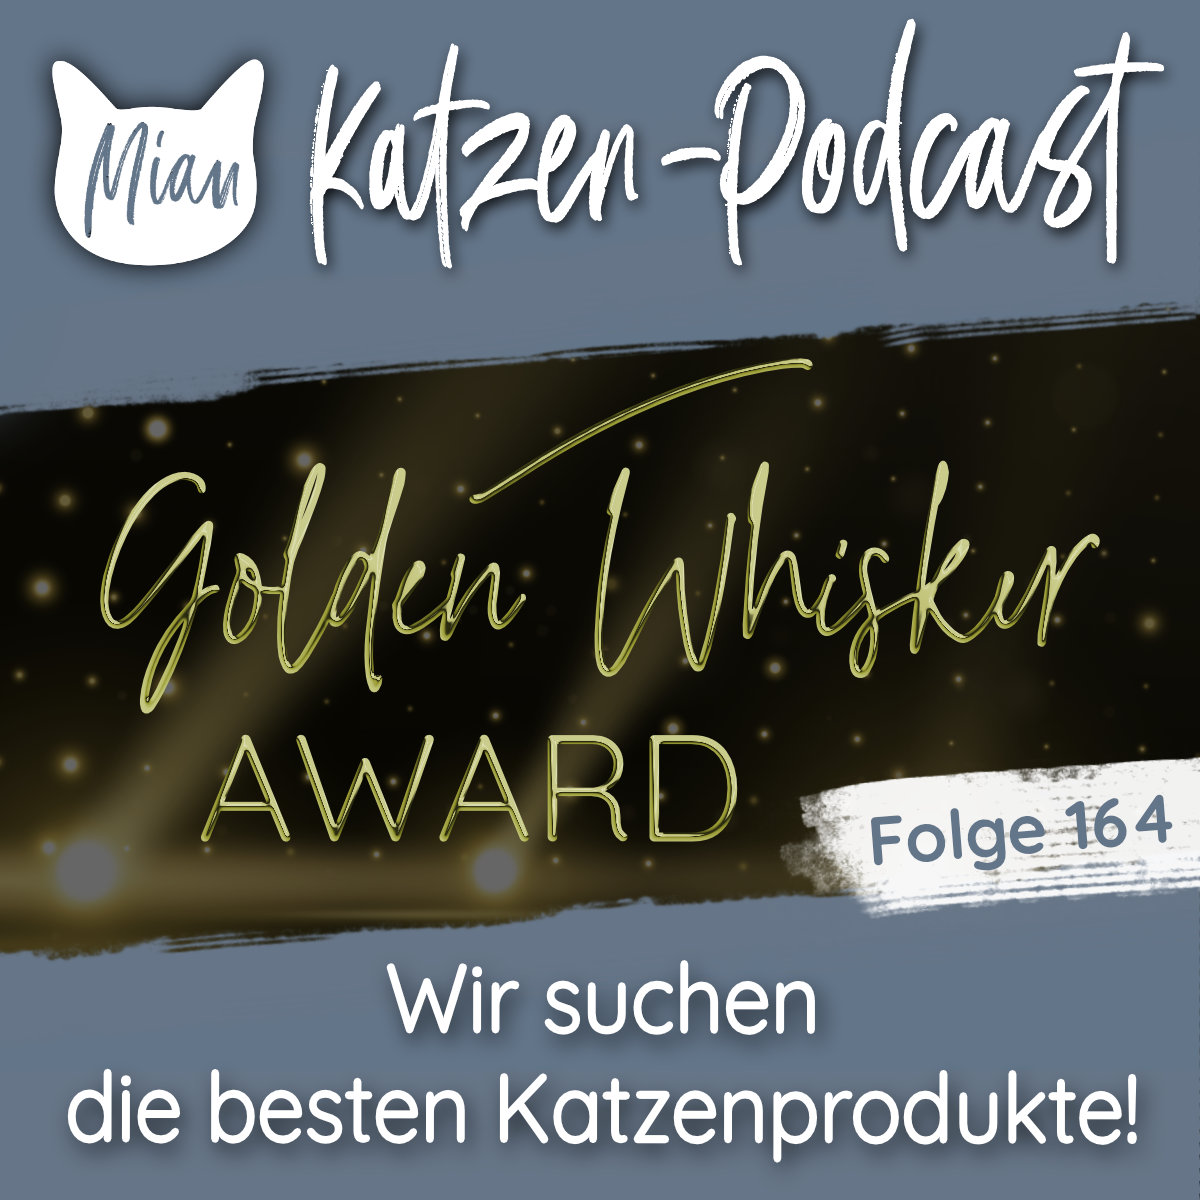 Wir suchen die besten Katzenprodukte und verleihen den Golden Whisker Award | MKP164